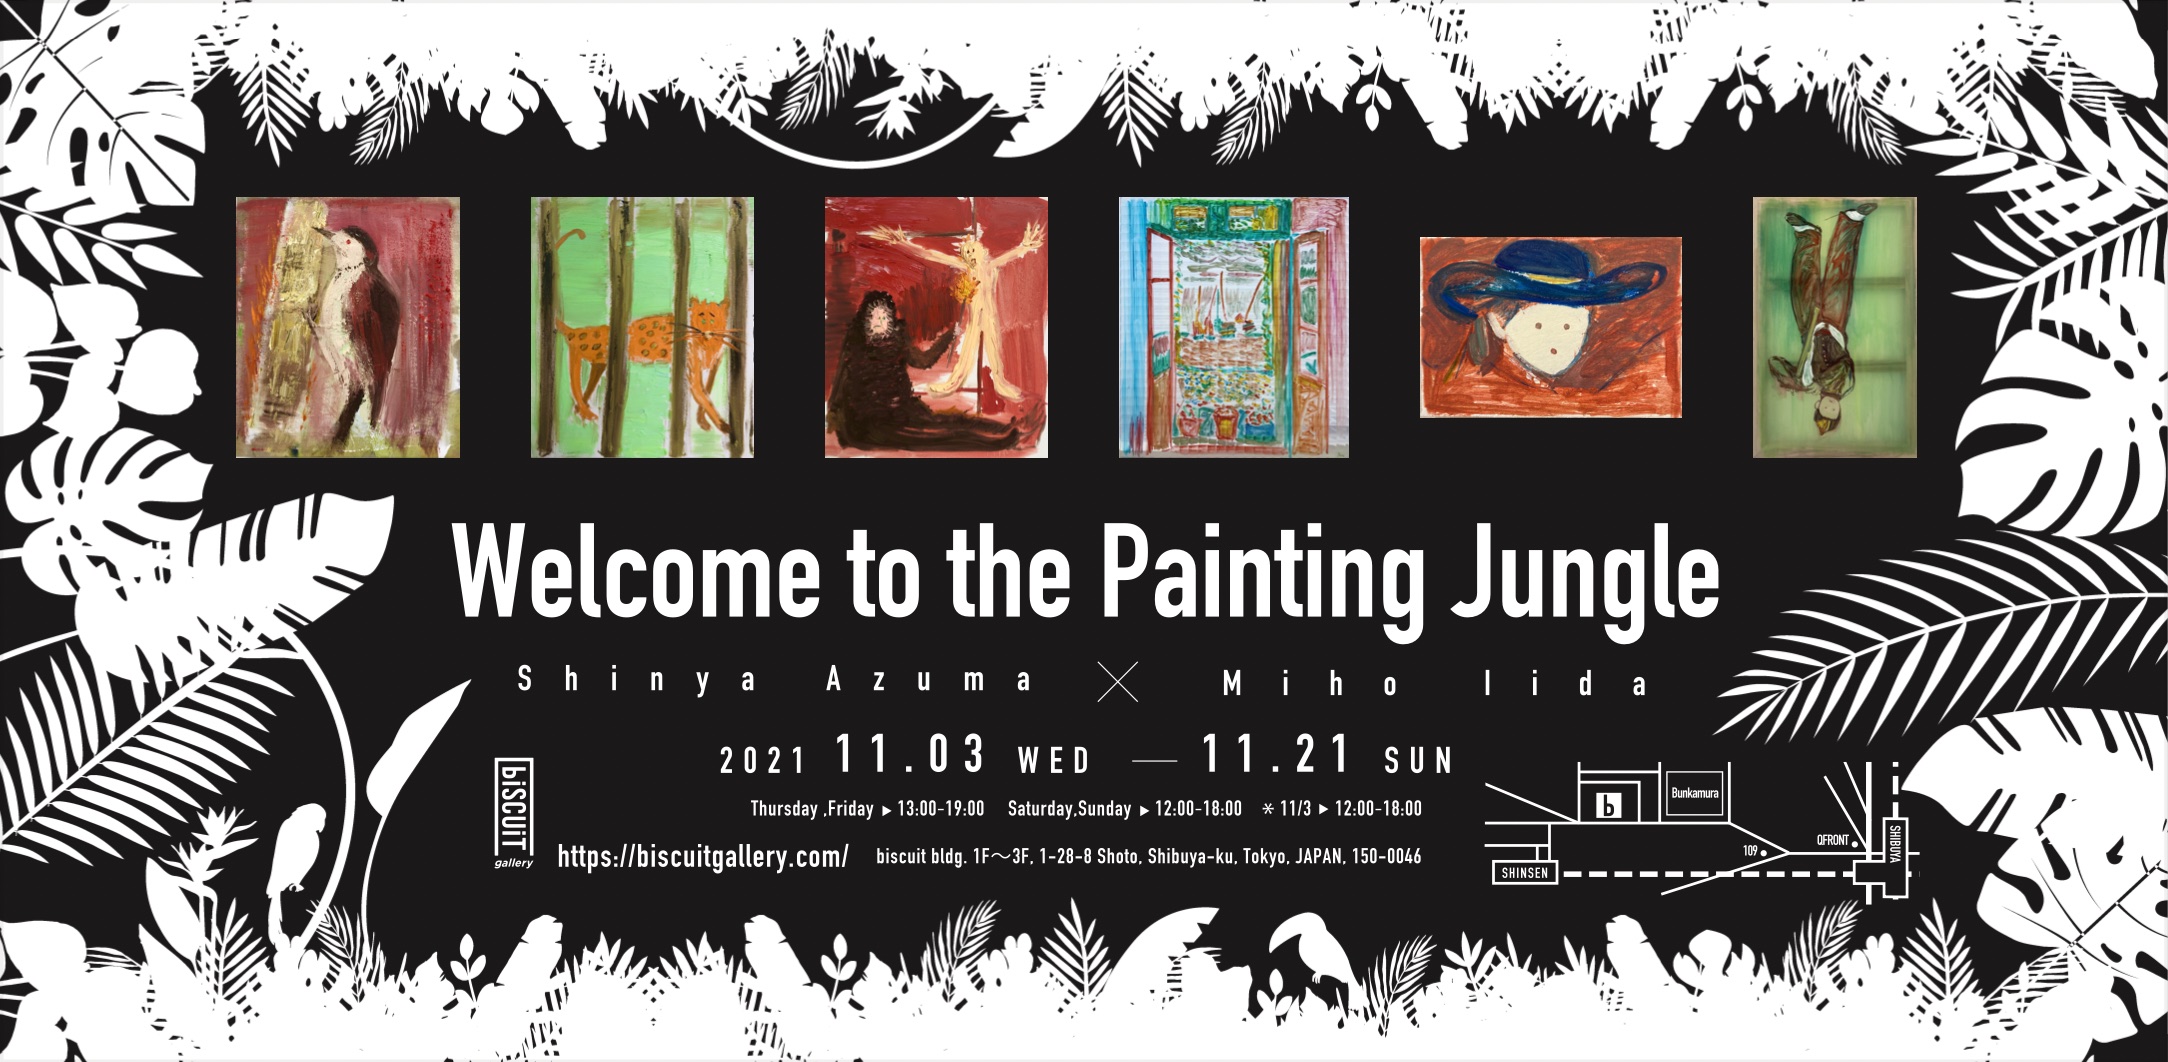 【2人展】東慎也×飯田美穂「Welcome to the Painting Jungle」